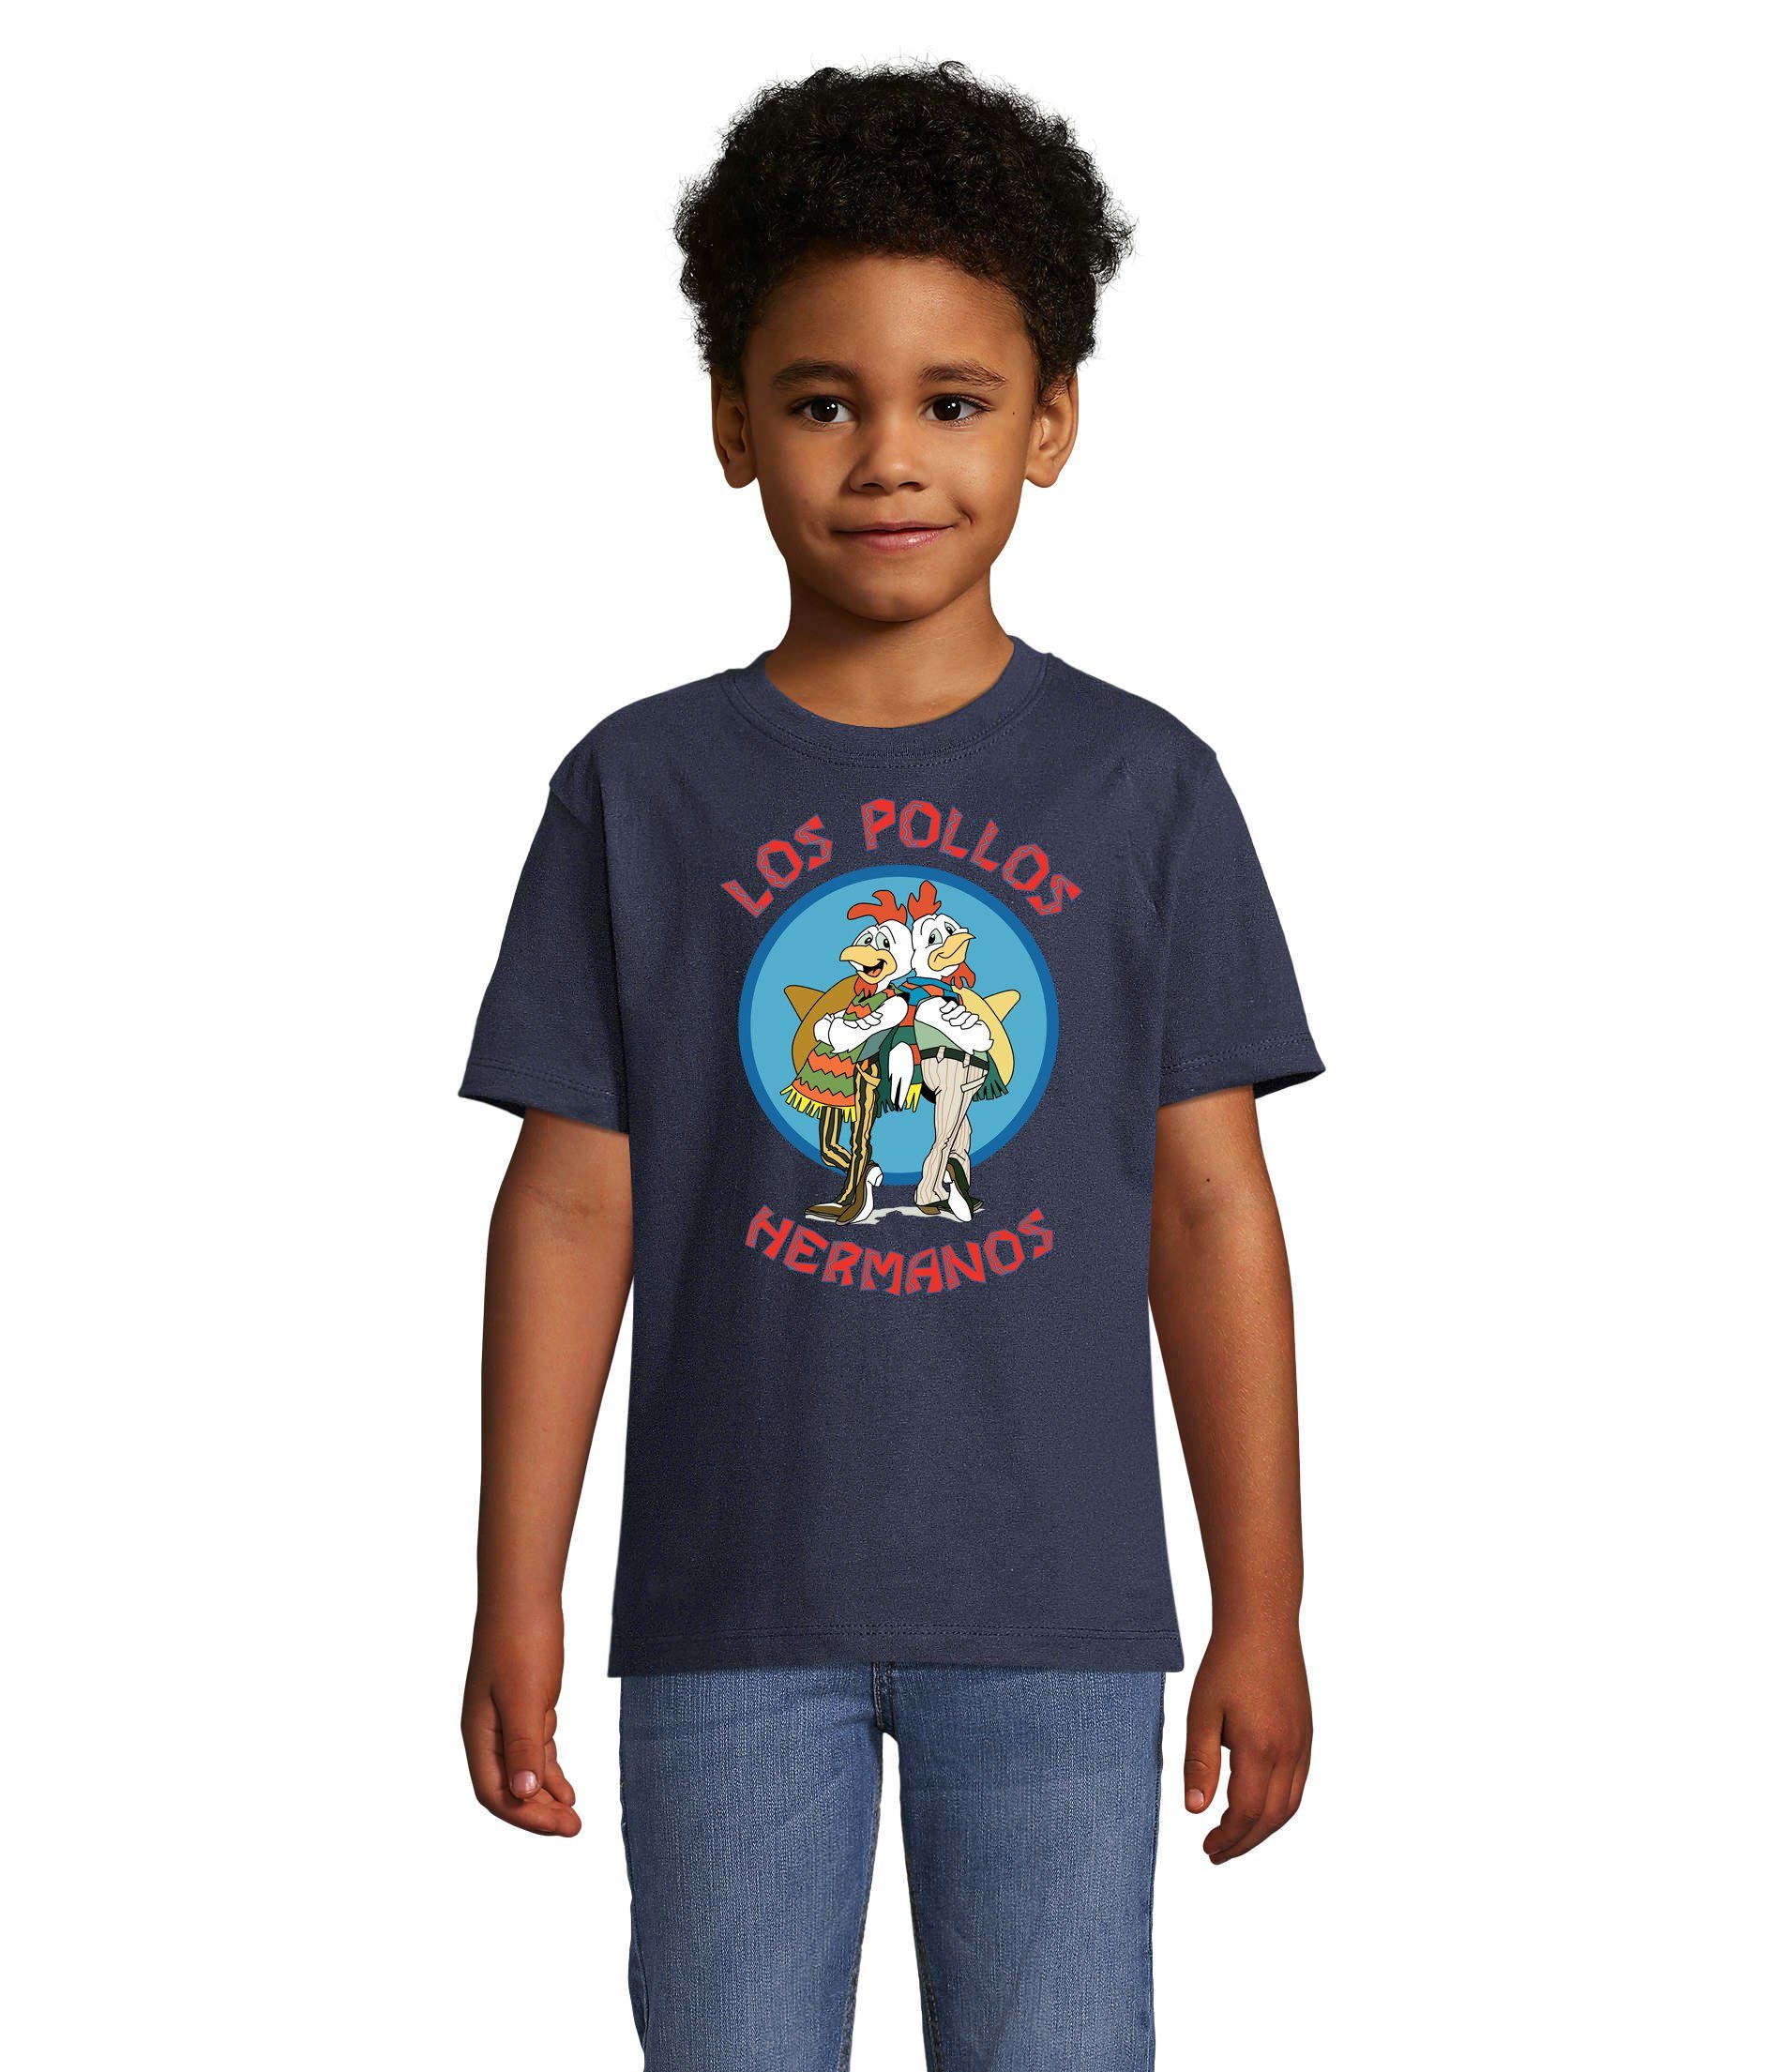 Blondie & Brownie T-Shirt Kinder Jungen & Mädchen Hermanos Hühner Los Pollos in vielen Farben Navyblau